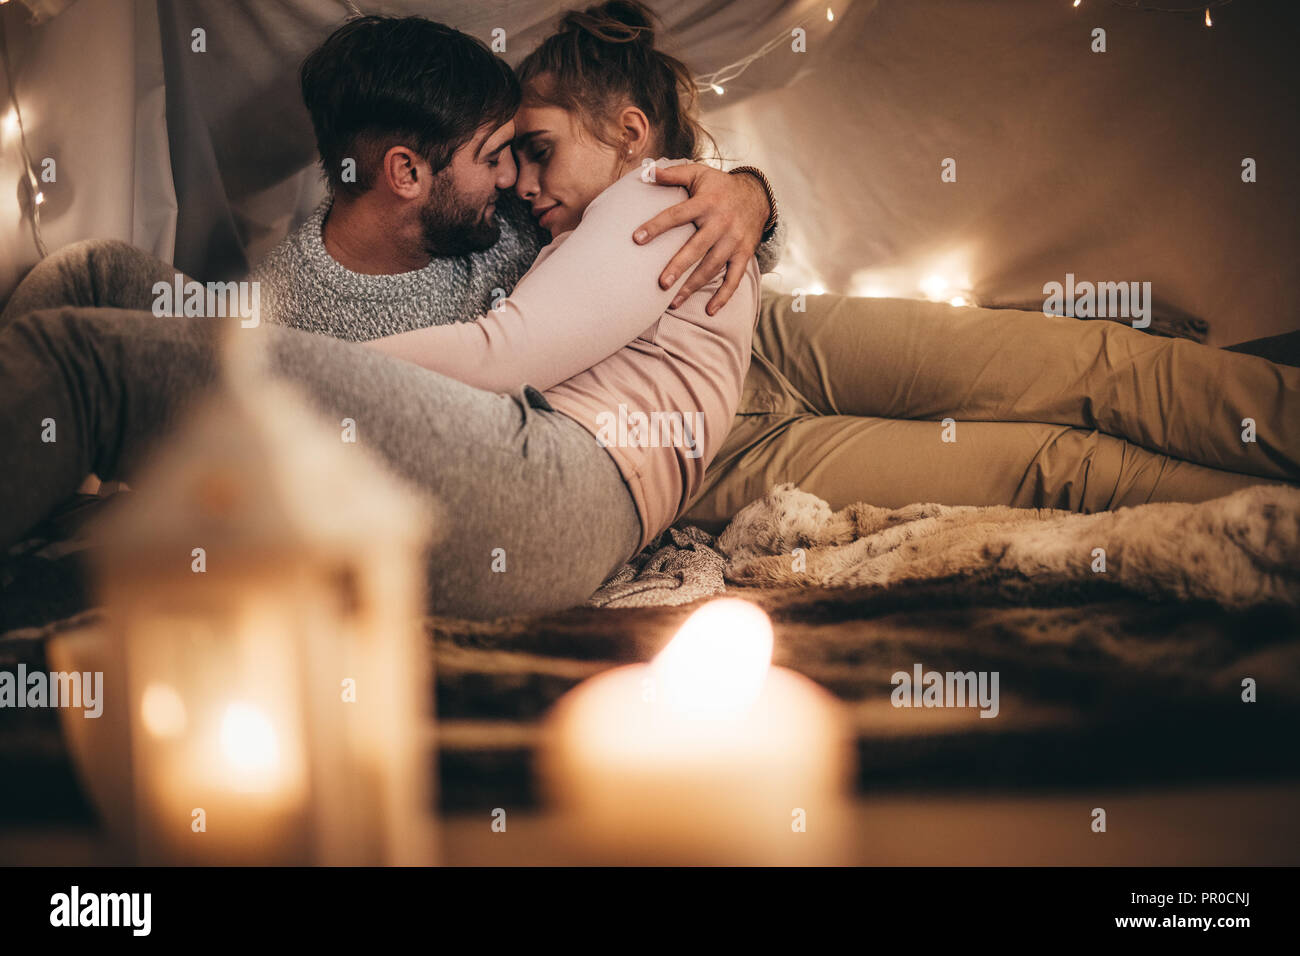 Frau auf dem Bett in die Arme ihres Ehemanns lag mit geschlossenen Augen. Paar romancing halten jedes andere im Schlafzimmer mit Kerzen brennen in den Vordergrund. Stockfoto